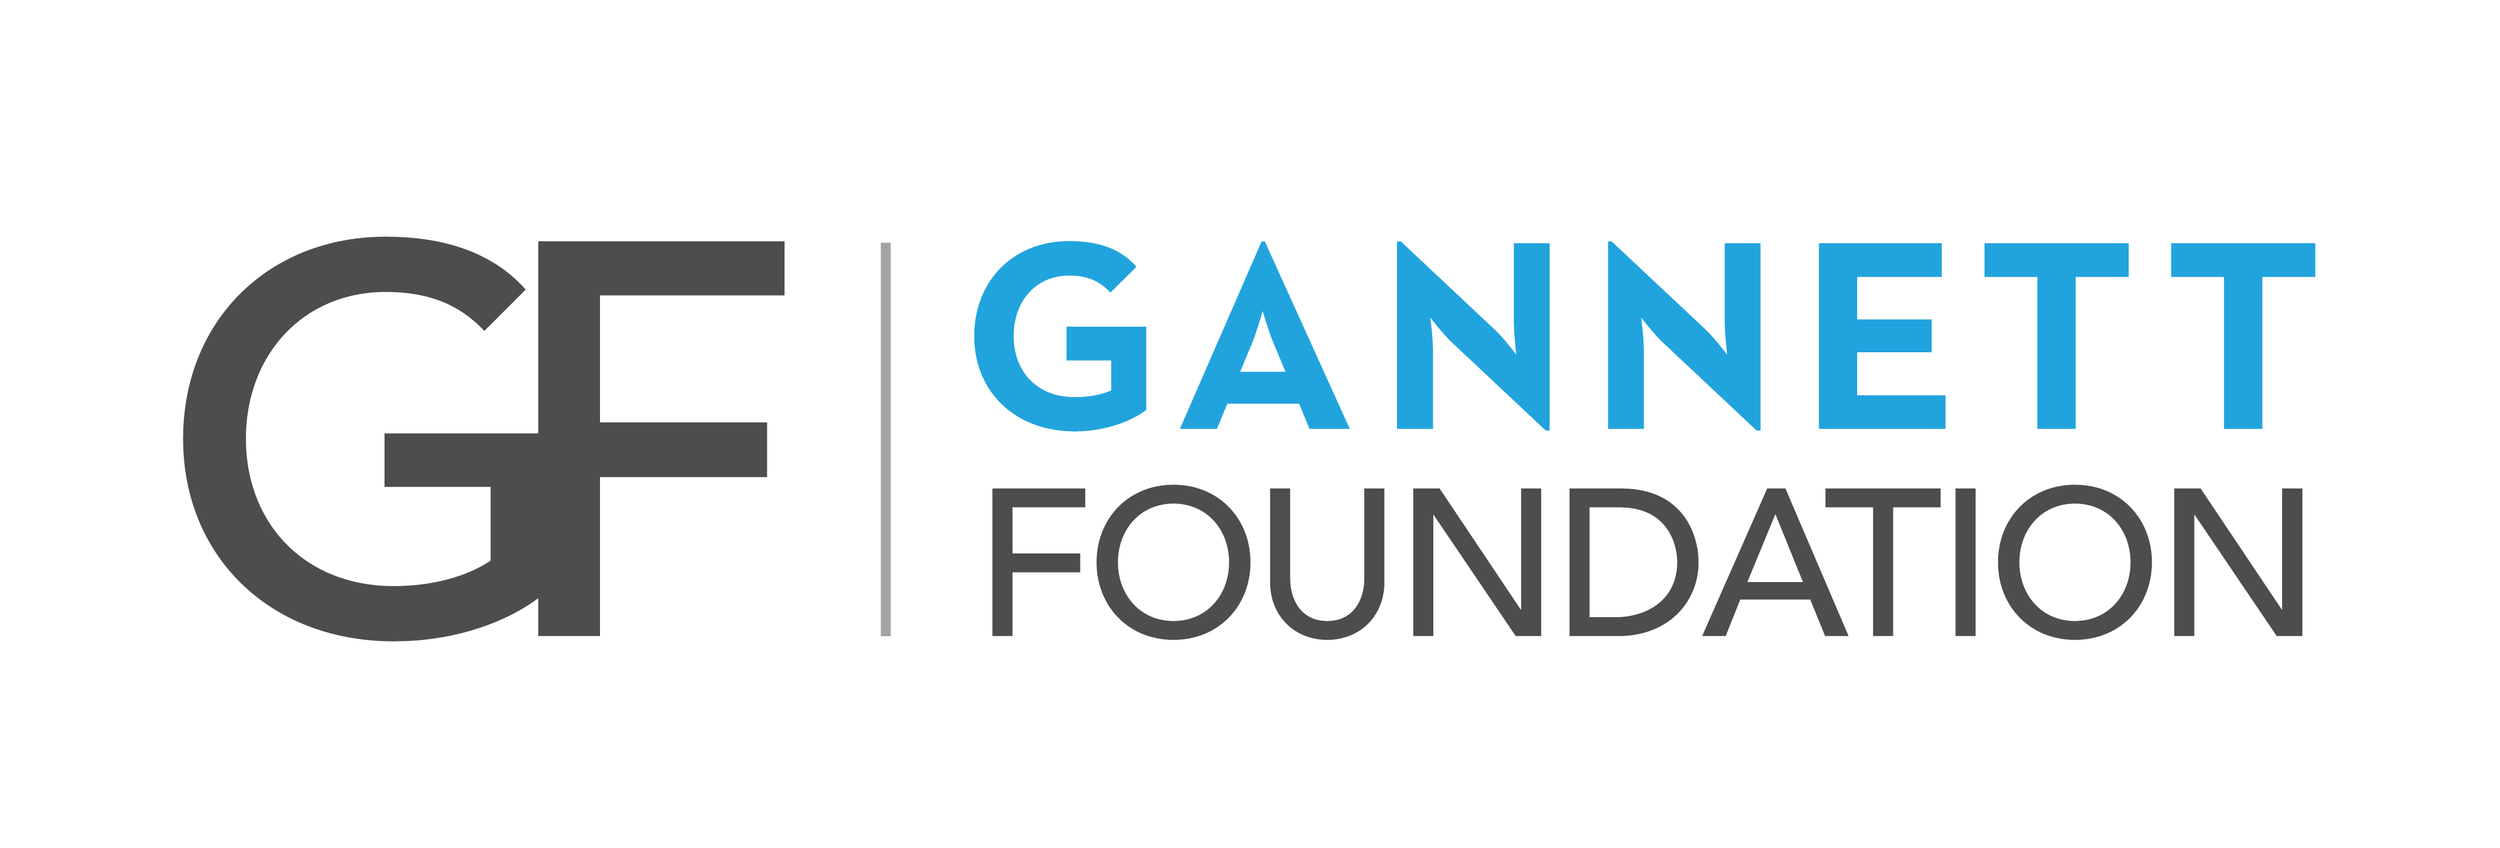 Gannett-Foundation-logo.png